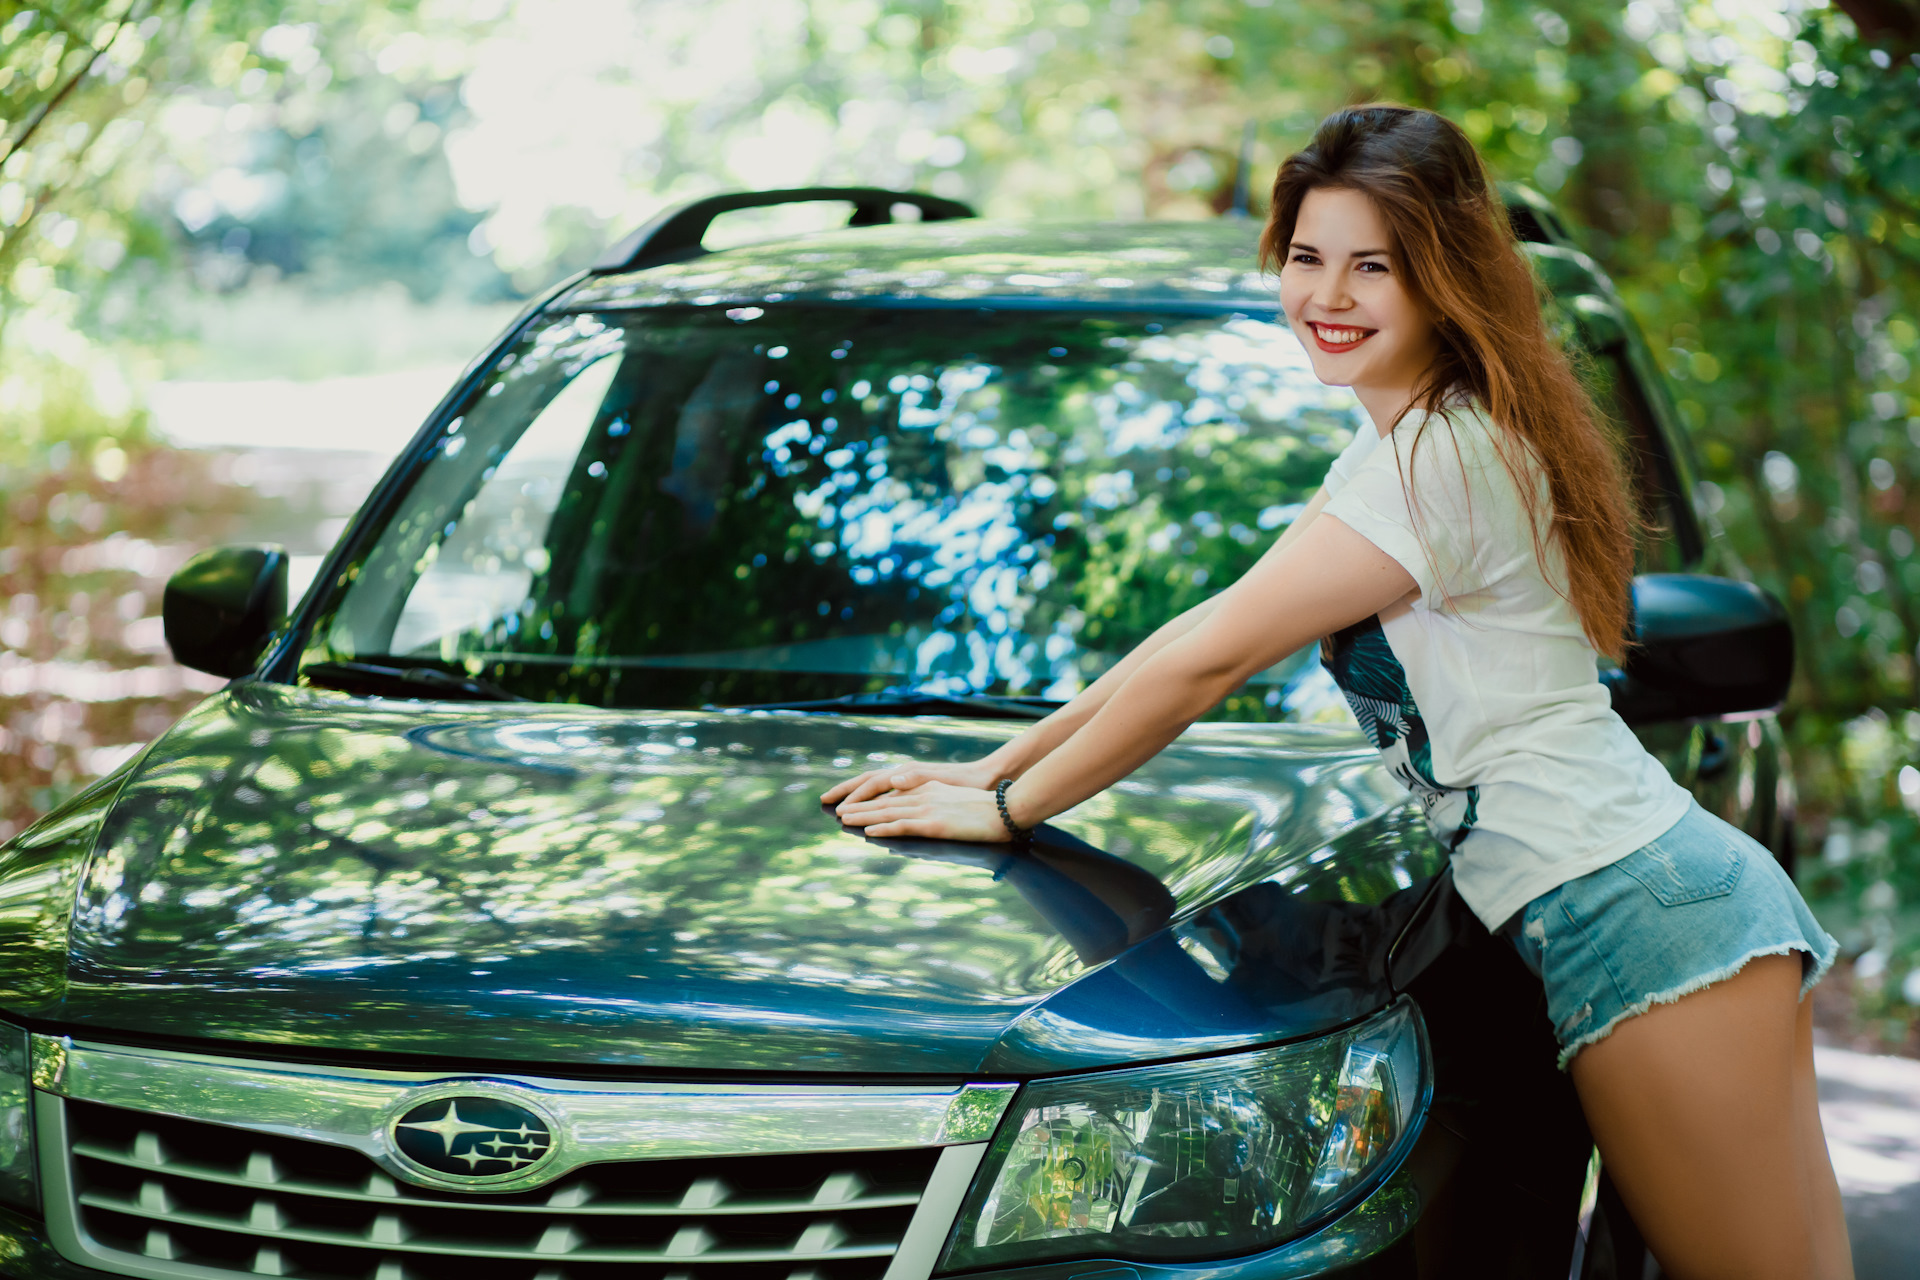 Вип девушки дриве моделс ру. Subaru Forester девушки. Субару Форестер и девушки. Фотосессия с машиной в лесу летом. Фотосессия с машиной девушки летом в лесу.